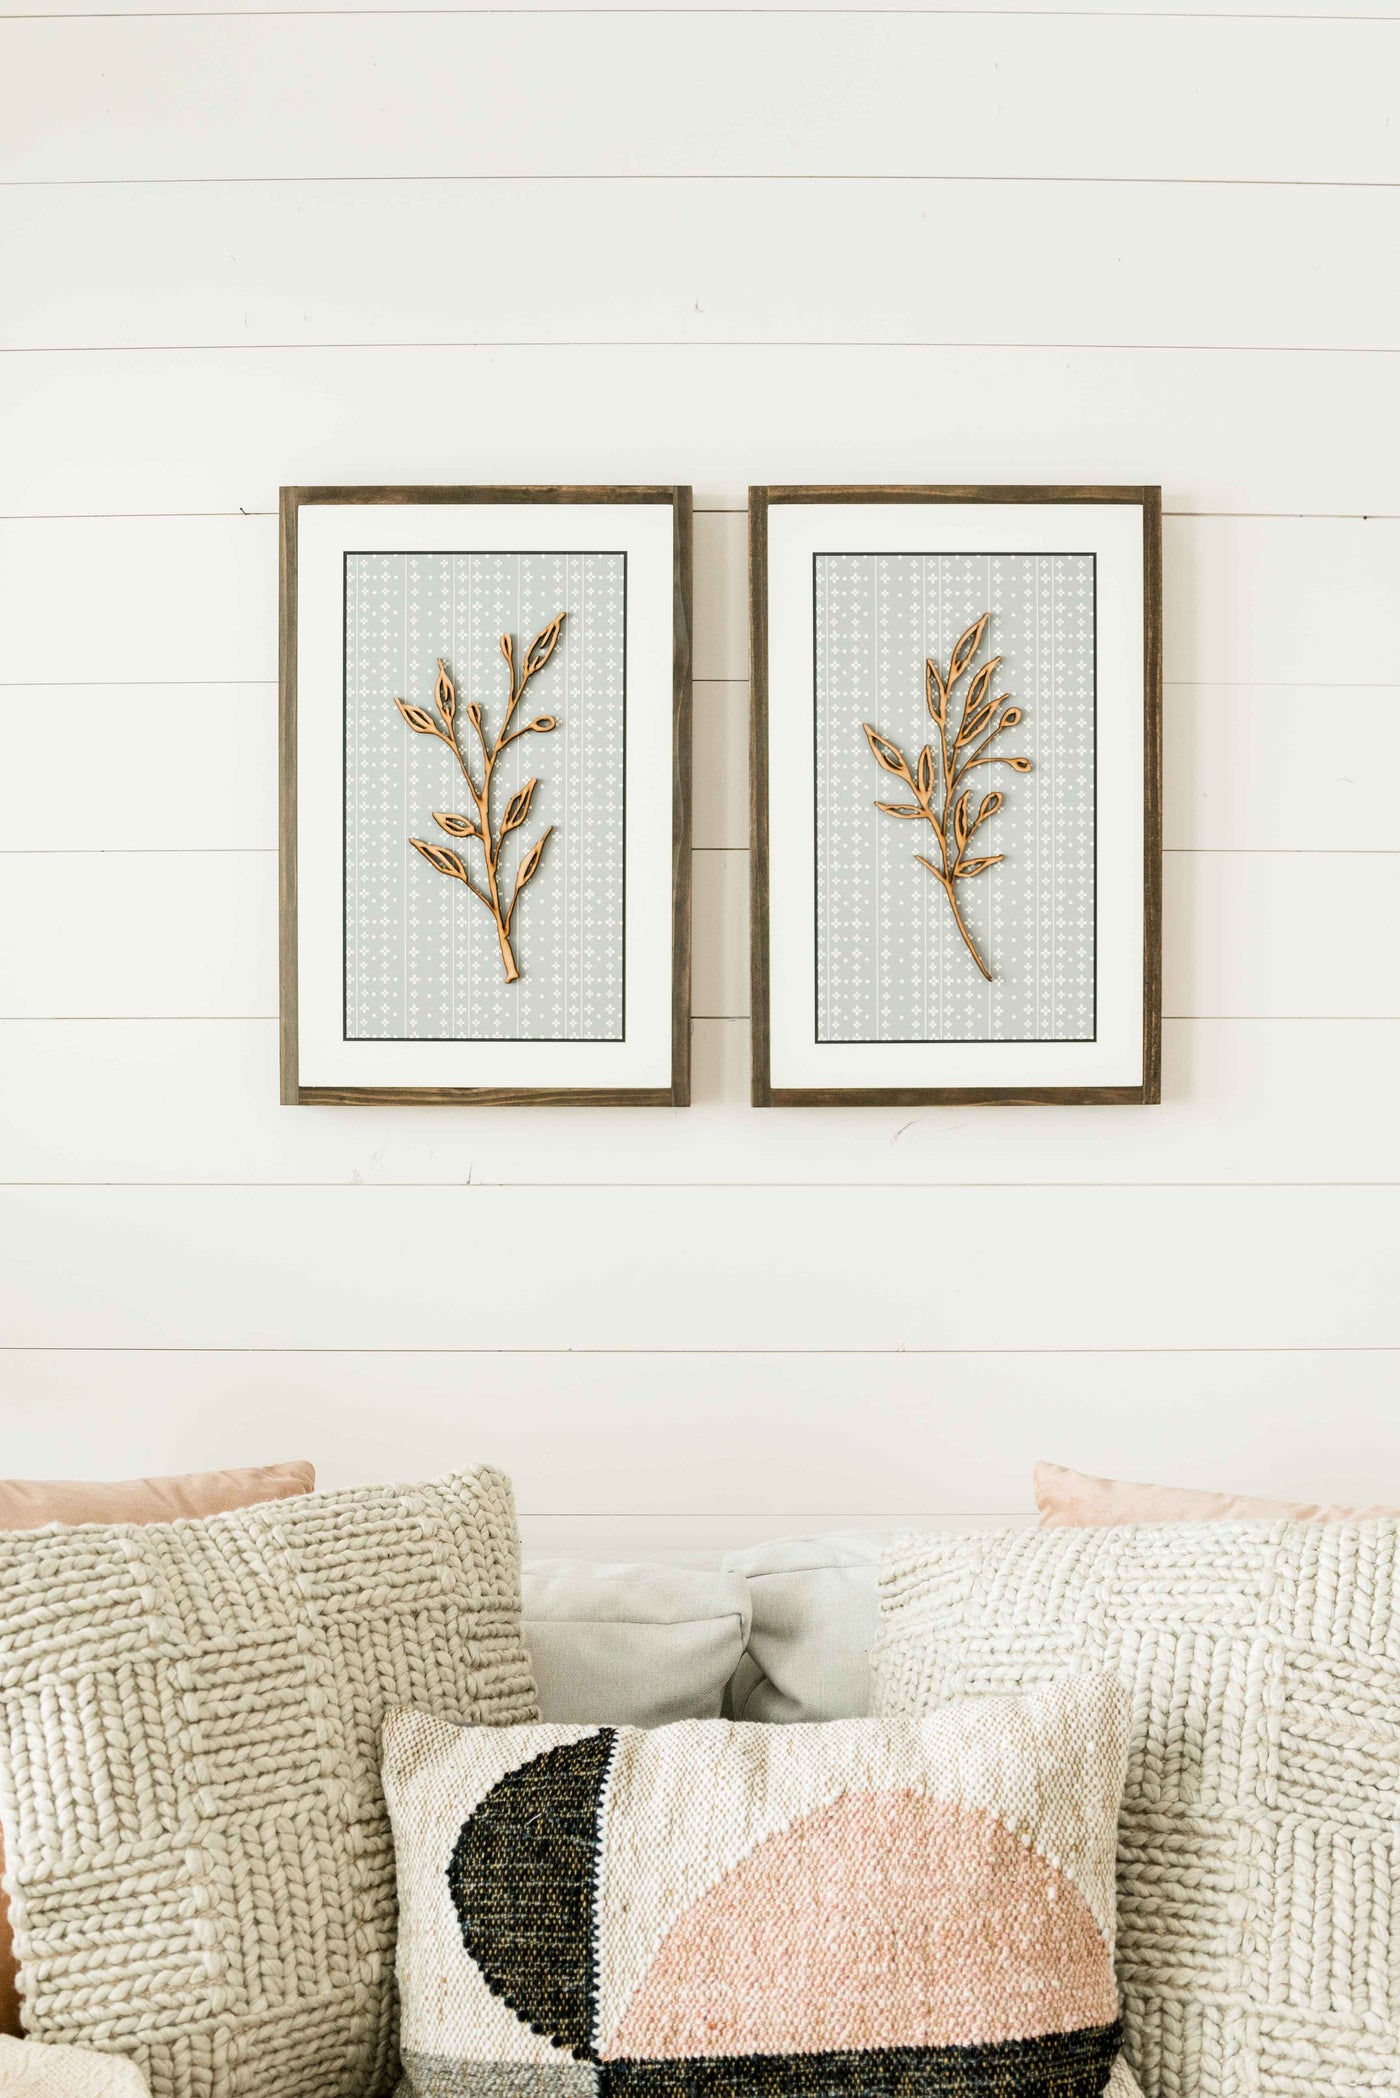 Willow & Sage Botanical | Pair or Single